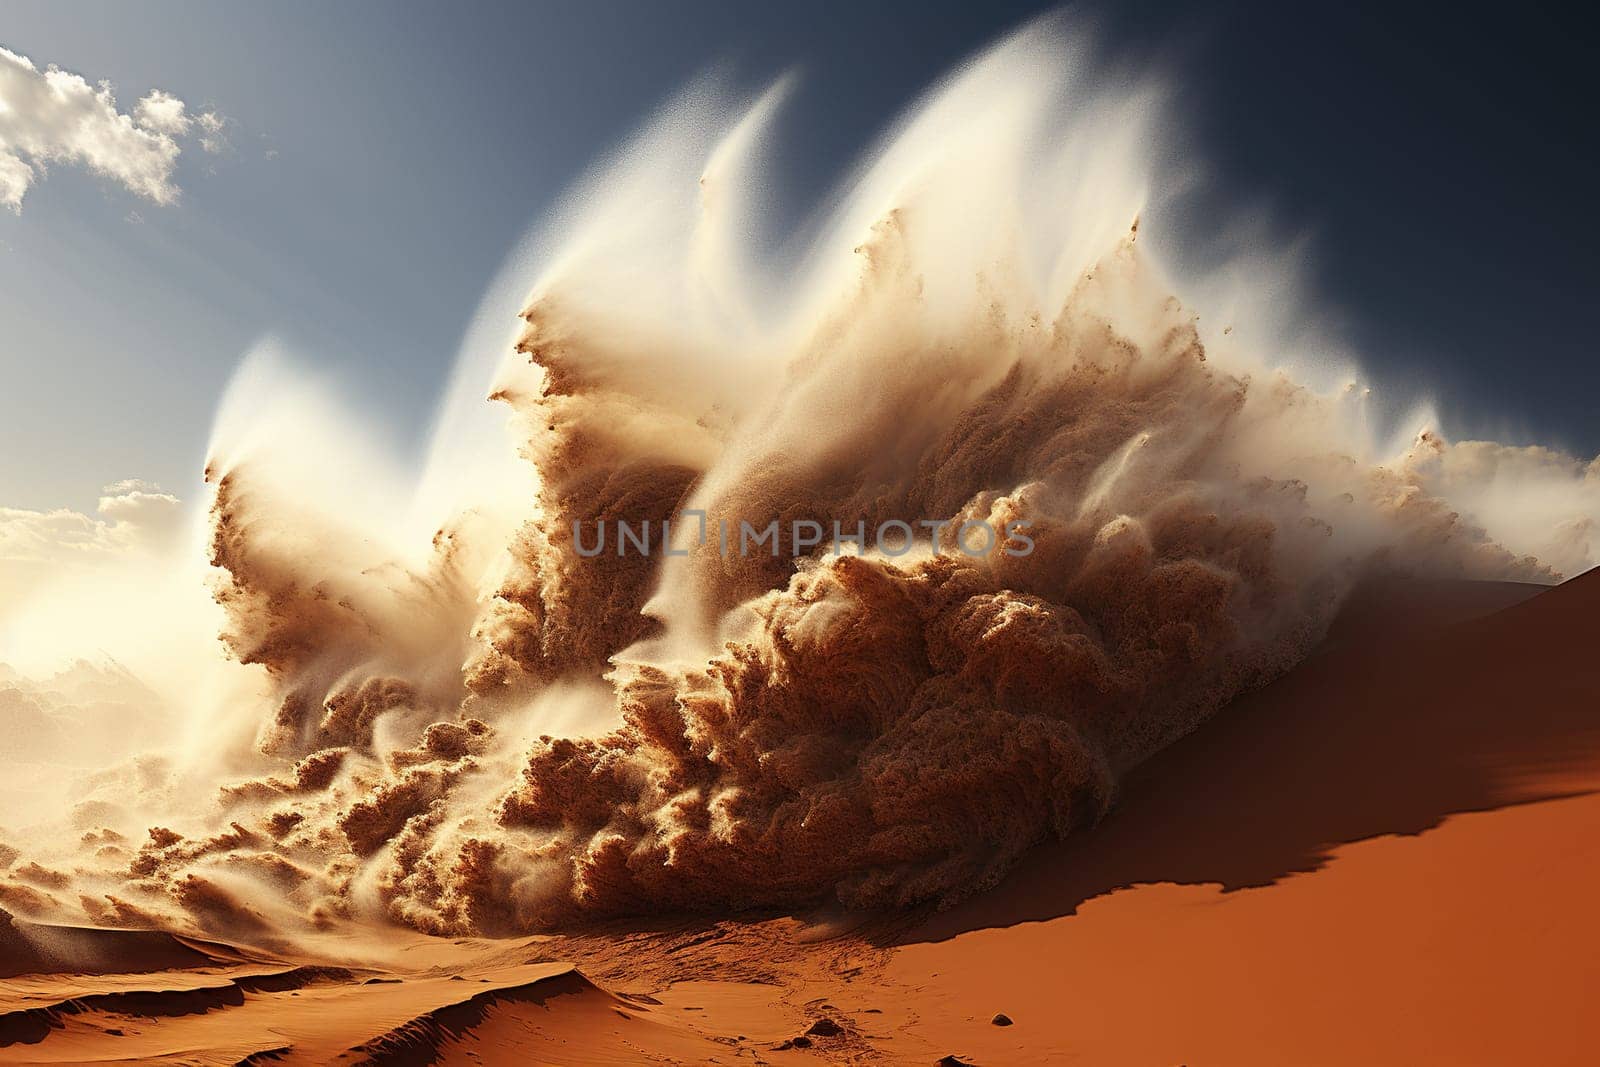 Sandstorm in the desert. Power of nature.